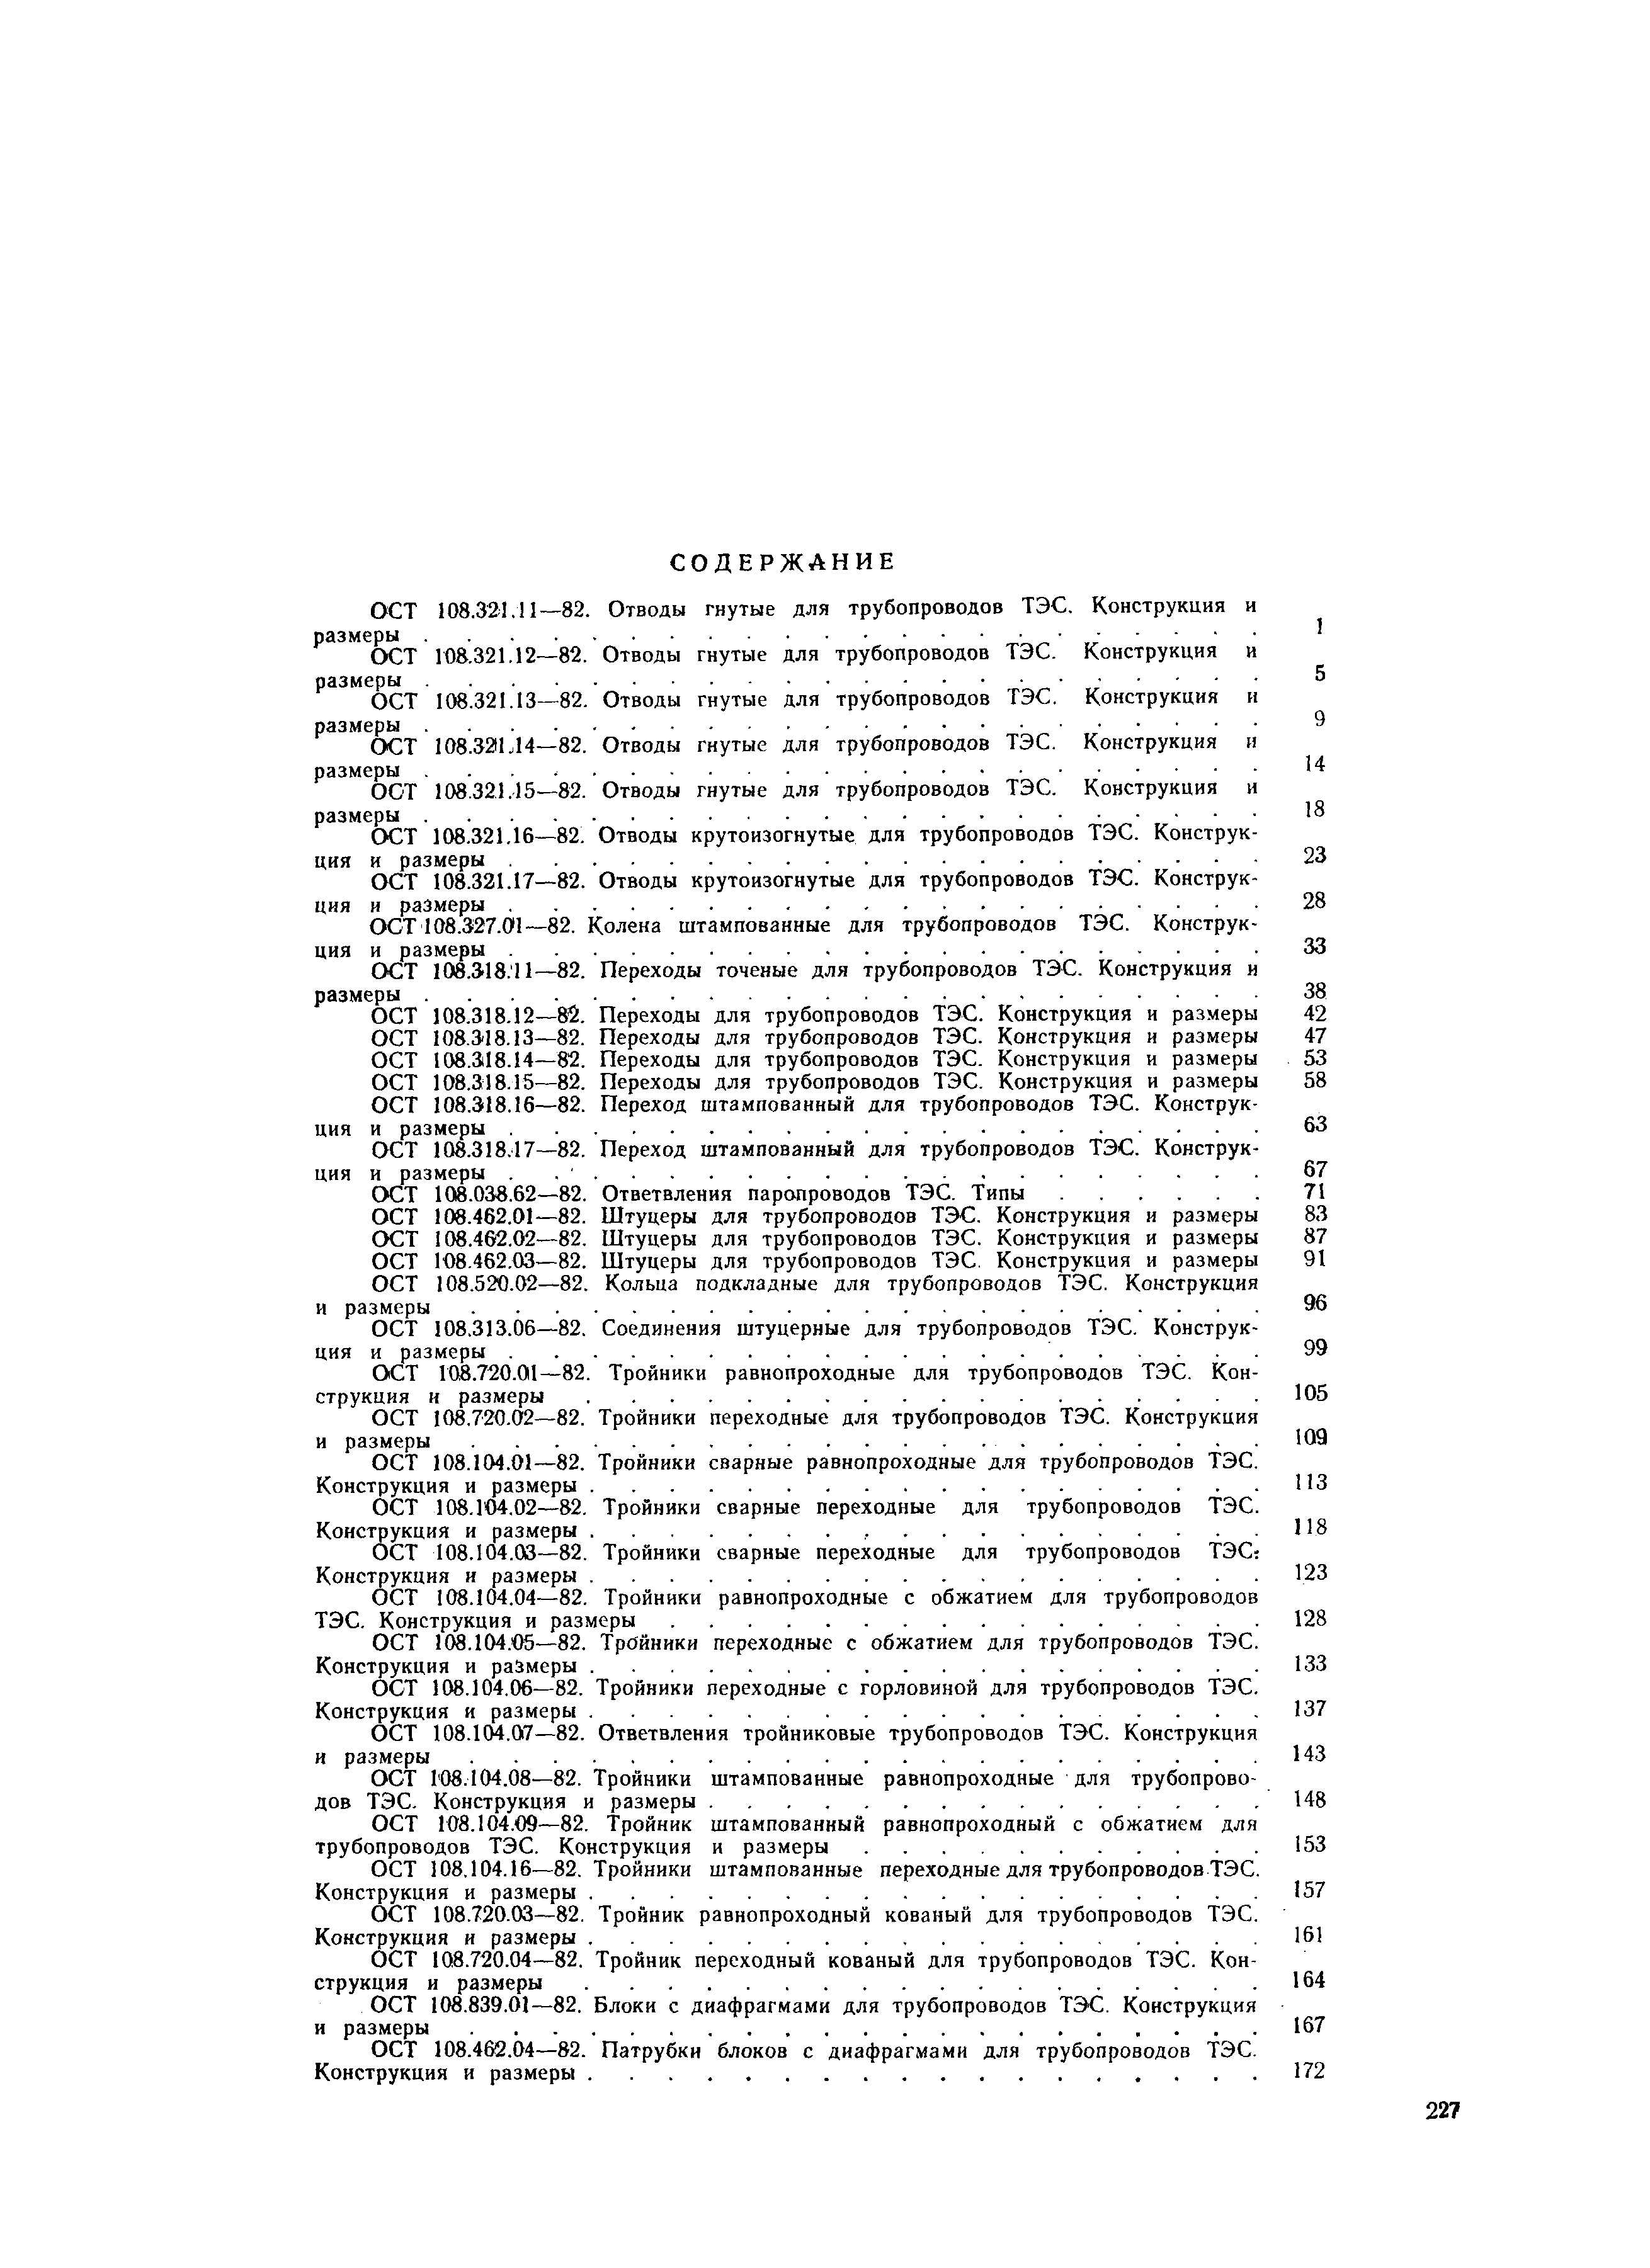 ОСТ 108.104.06-82